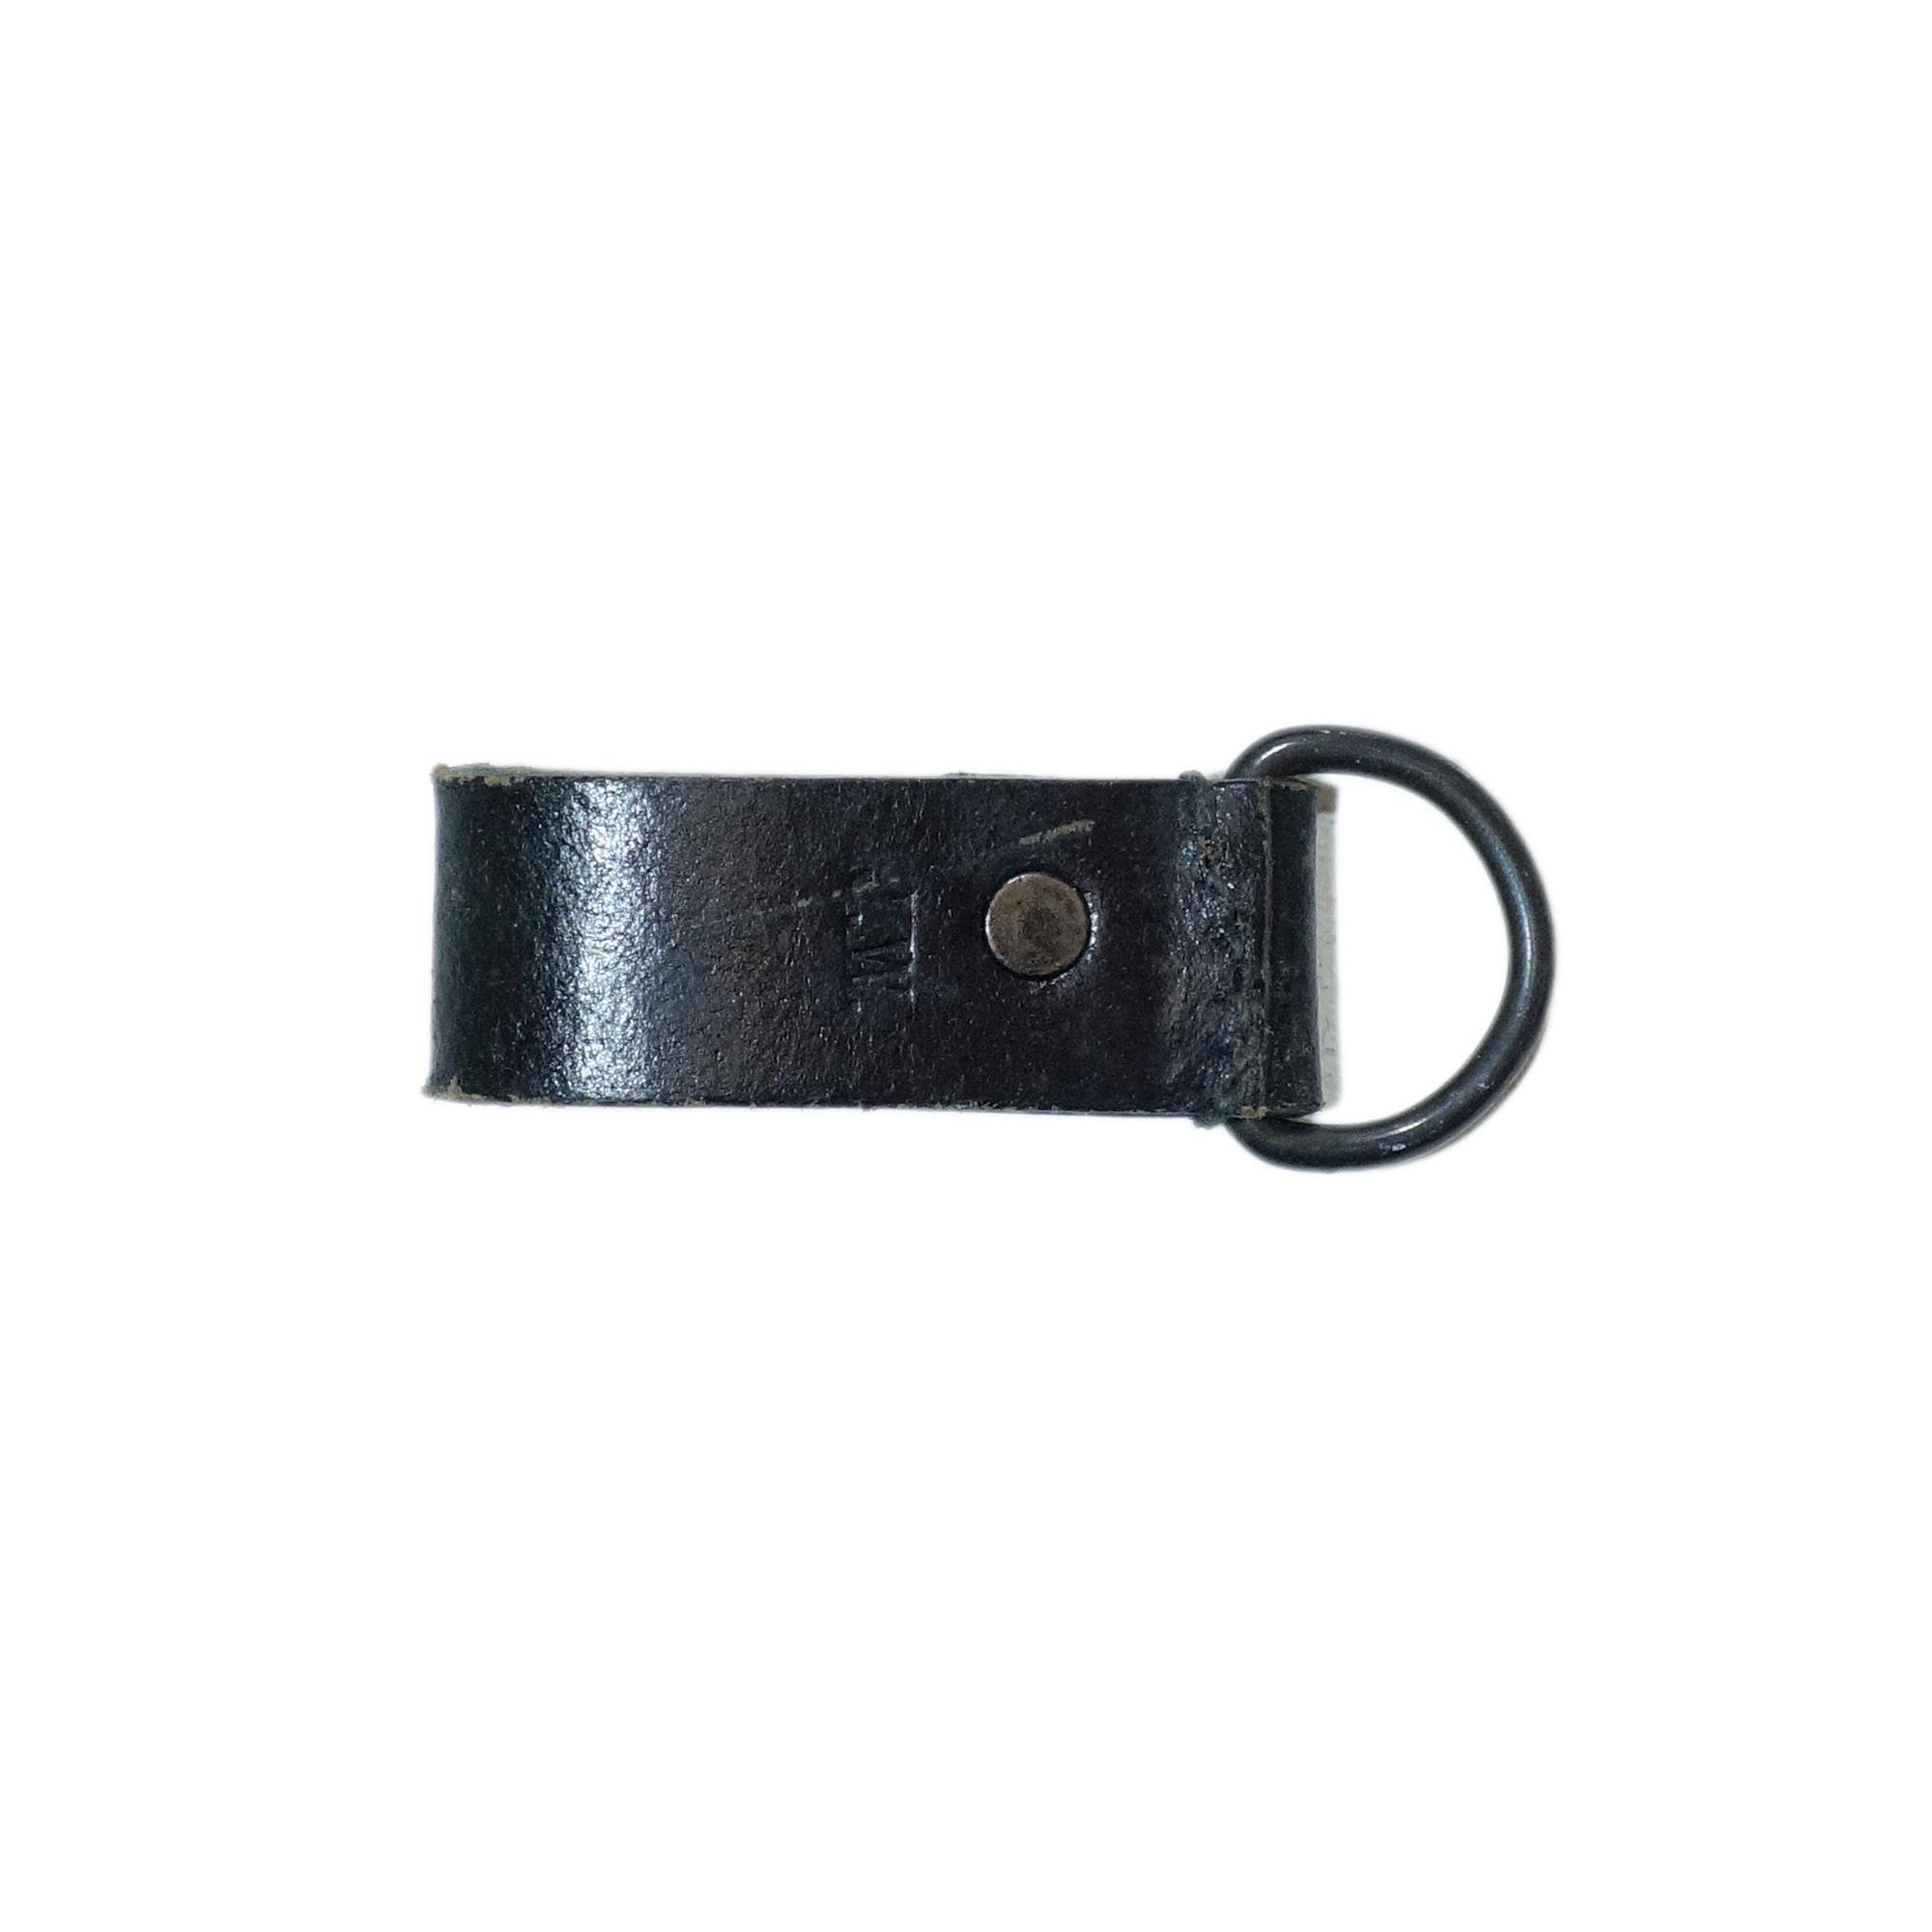 Austrian Army Surplus Belt Loop Keys Leather - Surplus & Lost